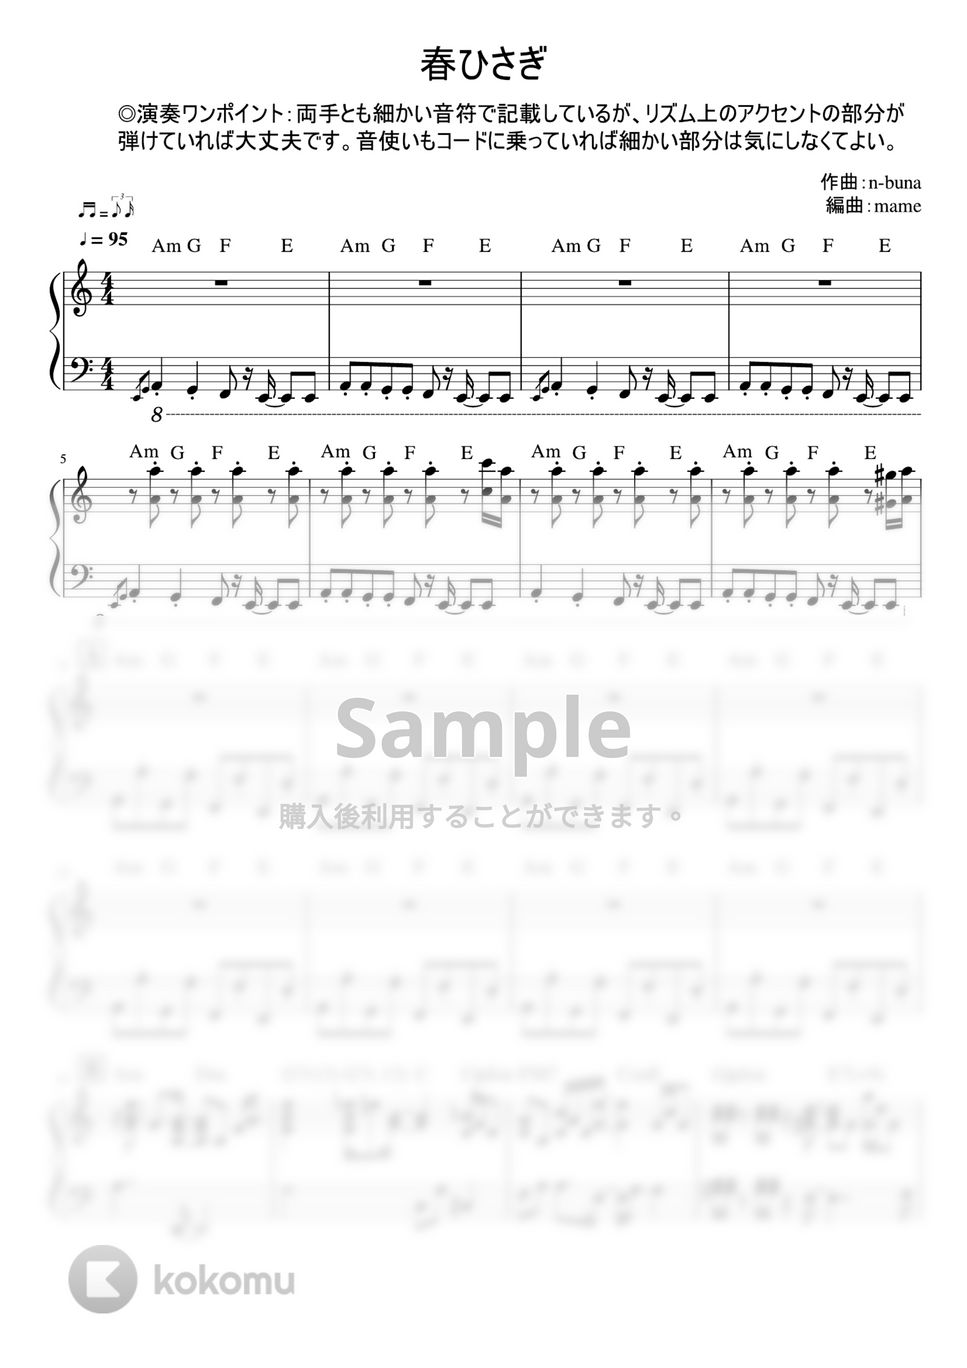 ヨルシカ - 春ひさぎ (ピアノパート) (ピアノパート) by mame